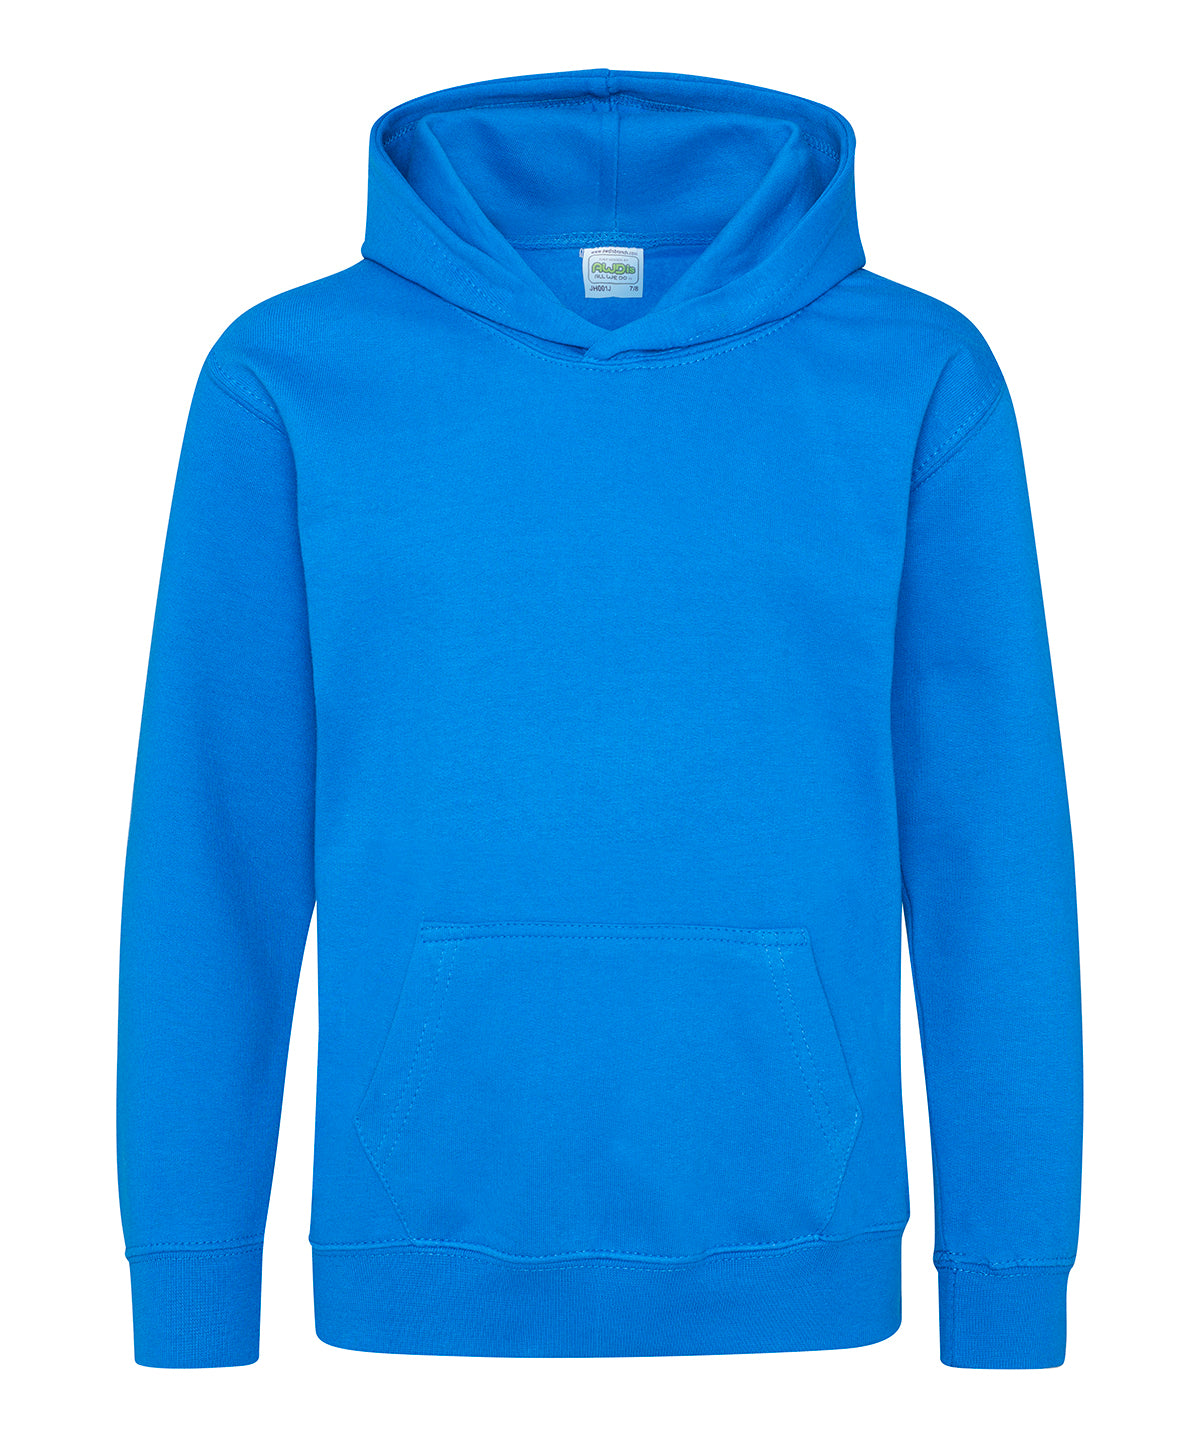 Personalised Hoodies - Black AWDis Just Hoods Kids hoodie